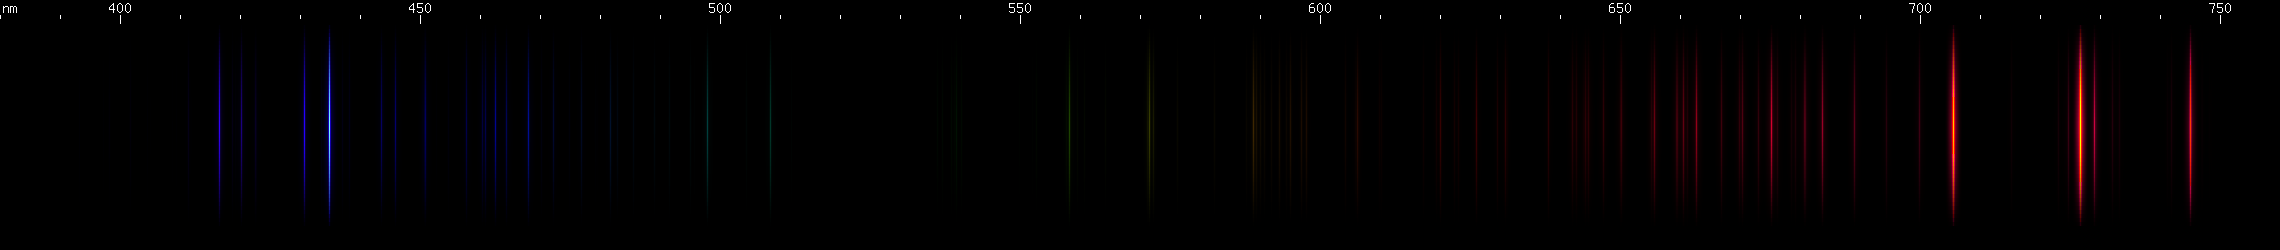 Spectral Lines of Radon